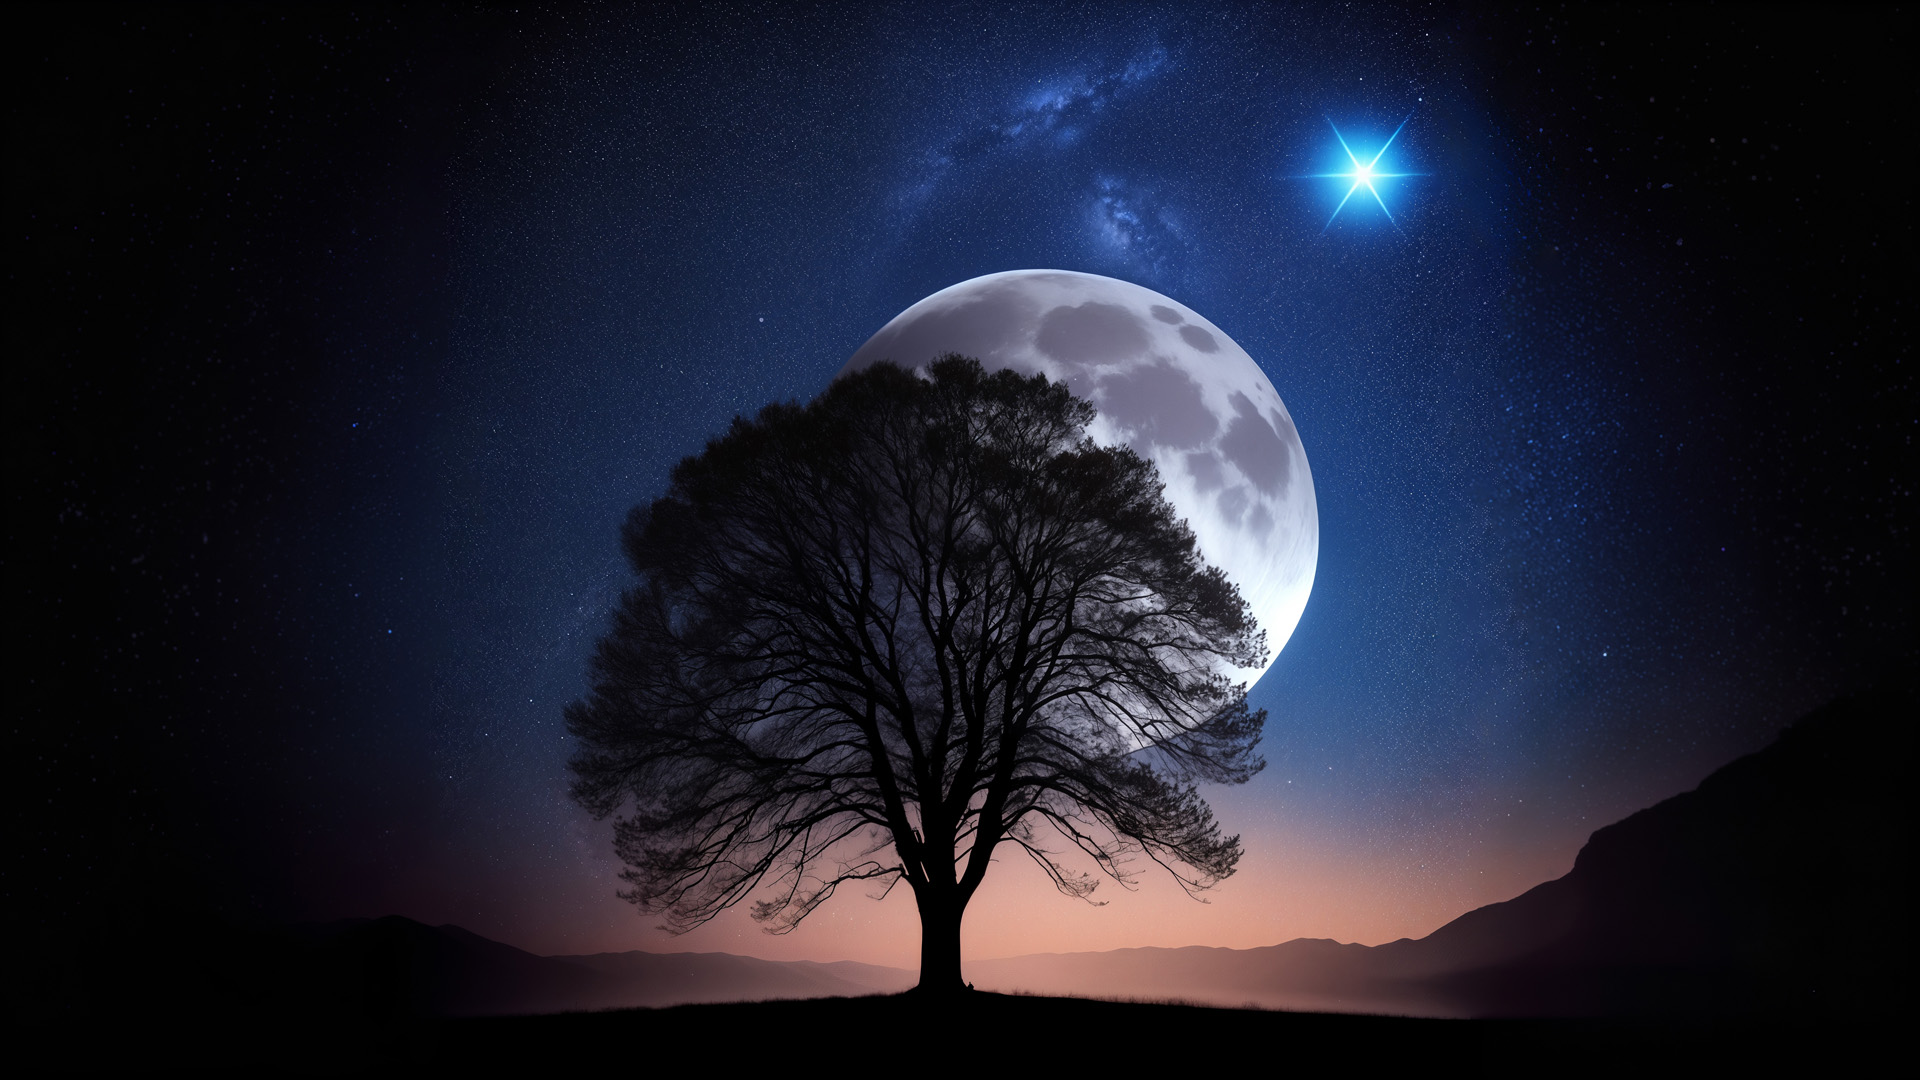 księżyc, drzewo, gwiaździste niebo, noc, gwiazdy, ciemność, krajobraz, pełnia, sylwetka, przyroda, kontemplacja, atmosfera